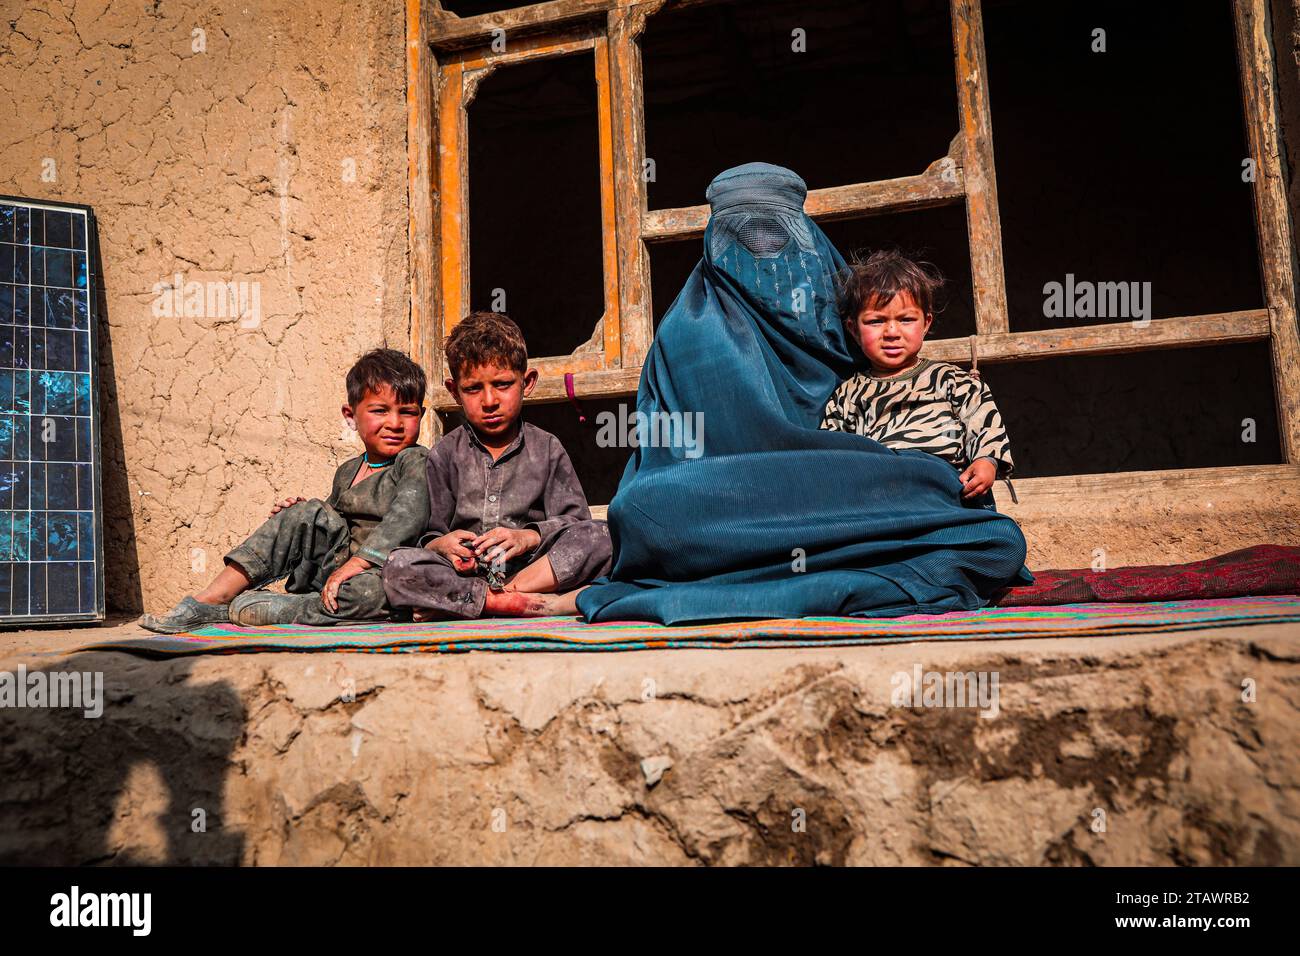 Une veuve triste dans le besoin, accompagnée de ses enfants, représente des familles afghanes confrontées à la pauvreté et aux difficultés | Refugee Family. Banque D'Images